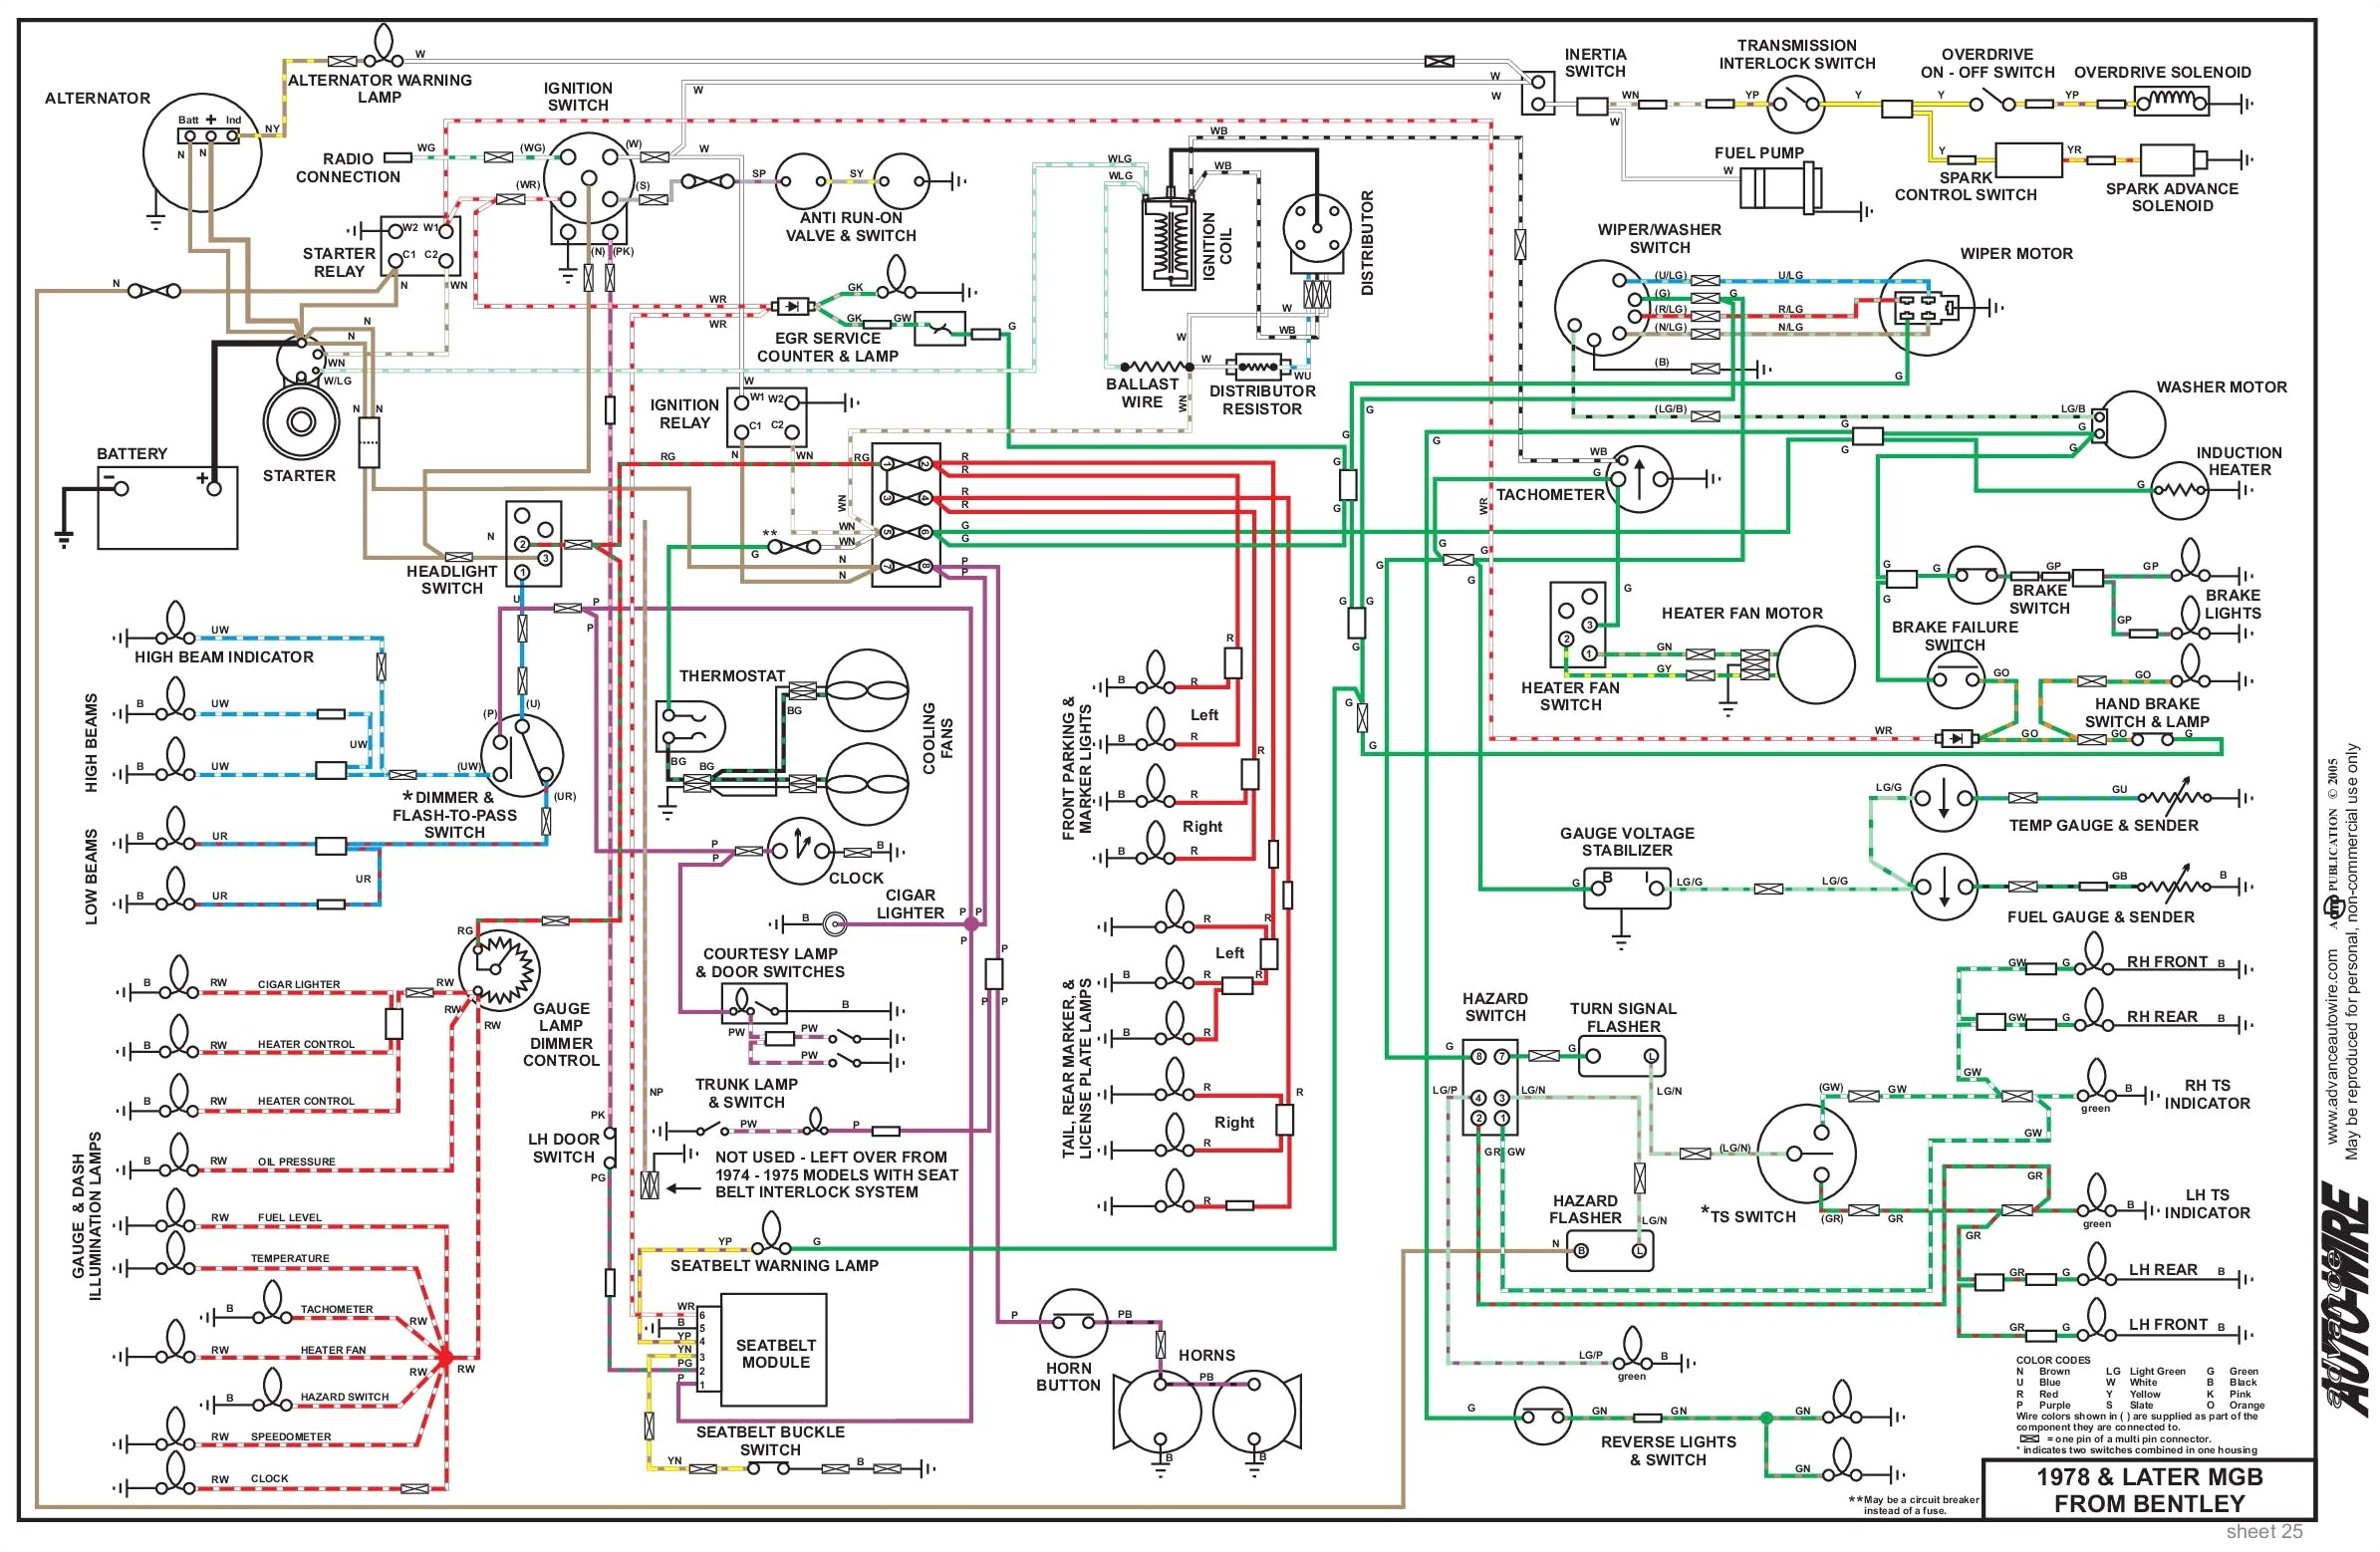 1976 mgb wiring diagram od wiring diagram post 1971 mgb ignition wiring diagram 1971 mgb wiring diagram